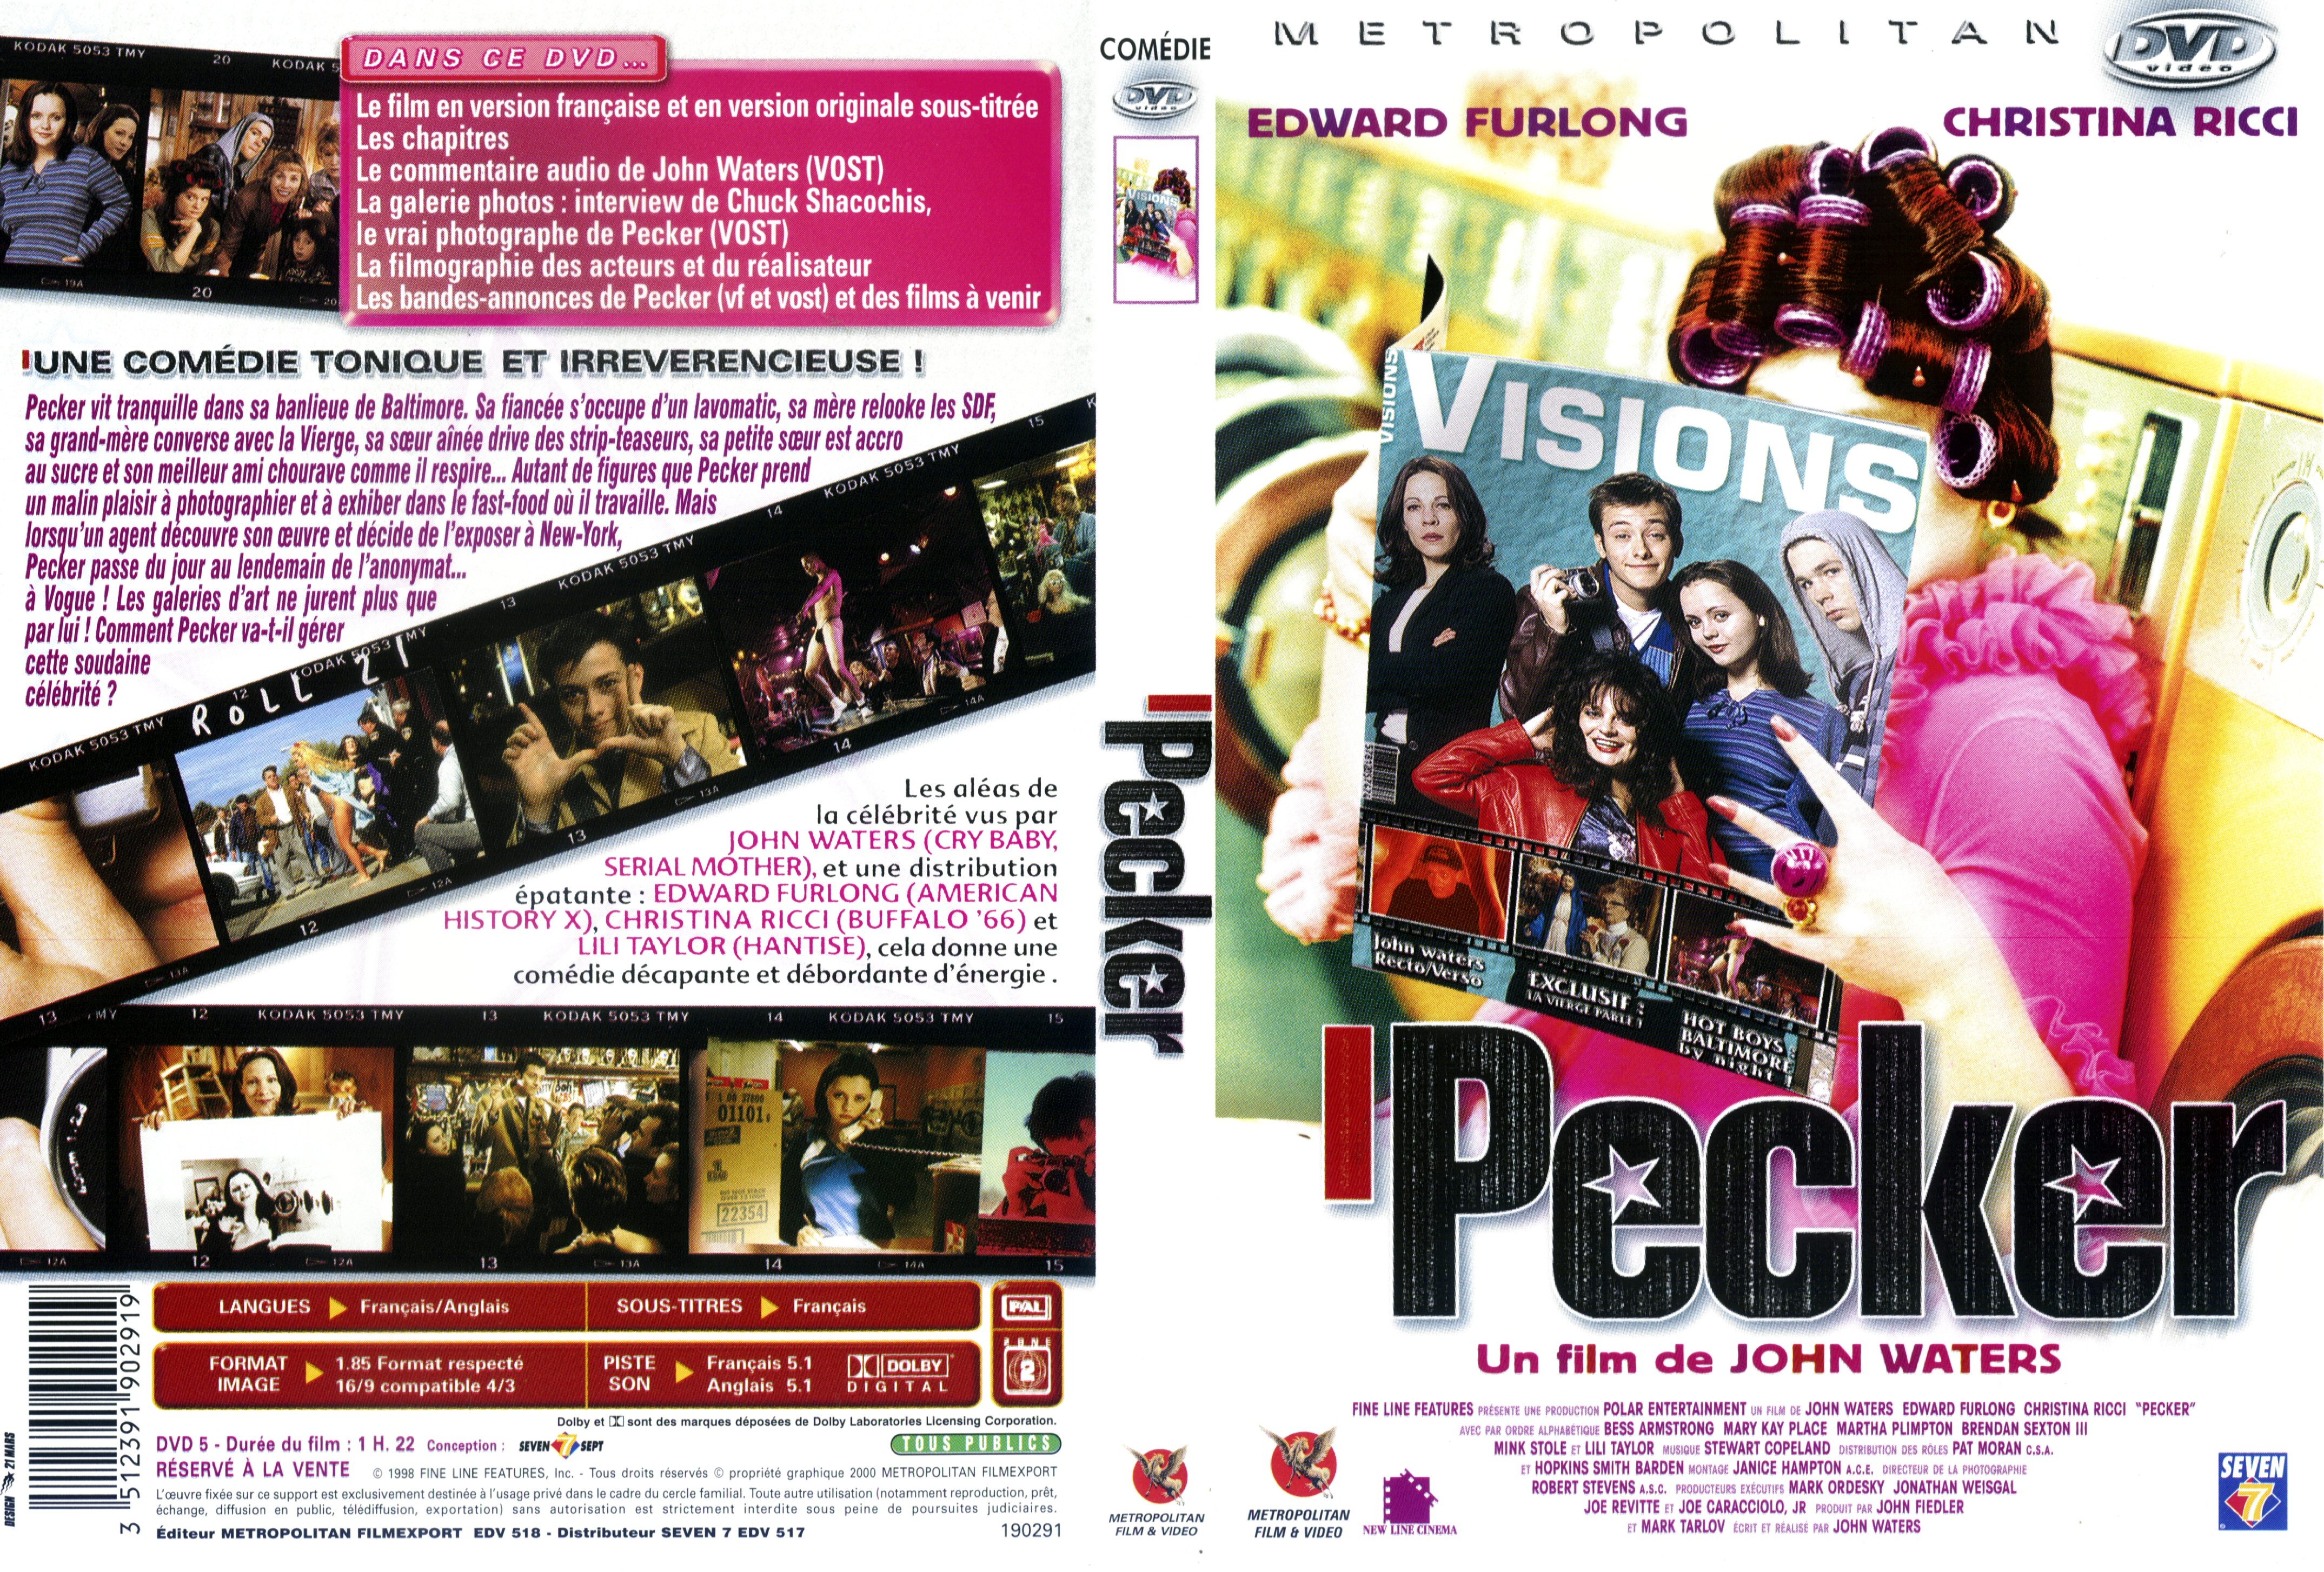 Jaquette DVD Pecker